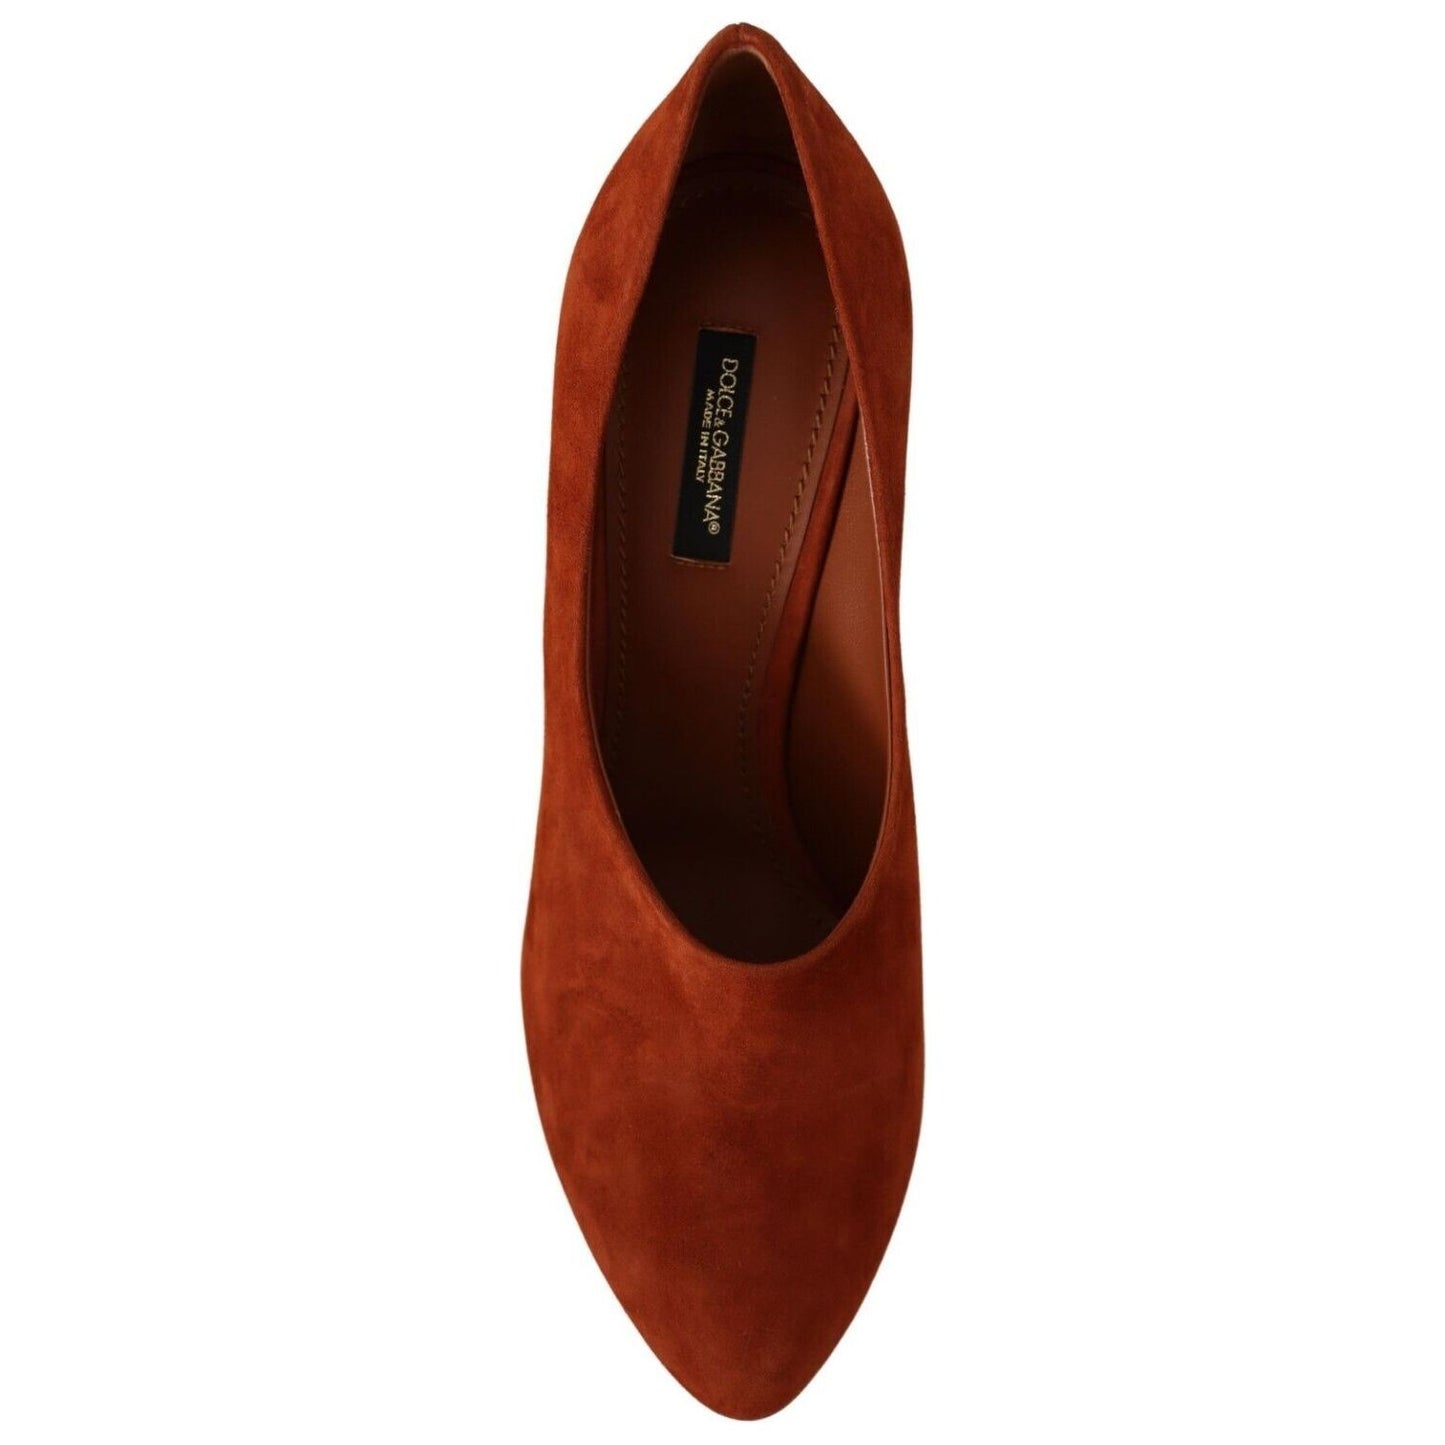 Dolce & Gabbana Elegant Cognac Suede Pumps brown-suede-leather-block-heels-pumps-shoes s-l1600-6-6-9c338505-c43.jpg